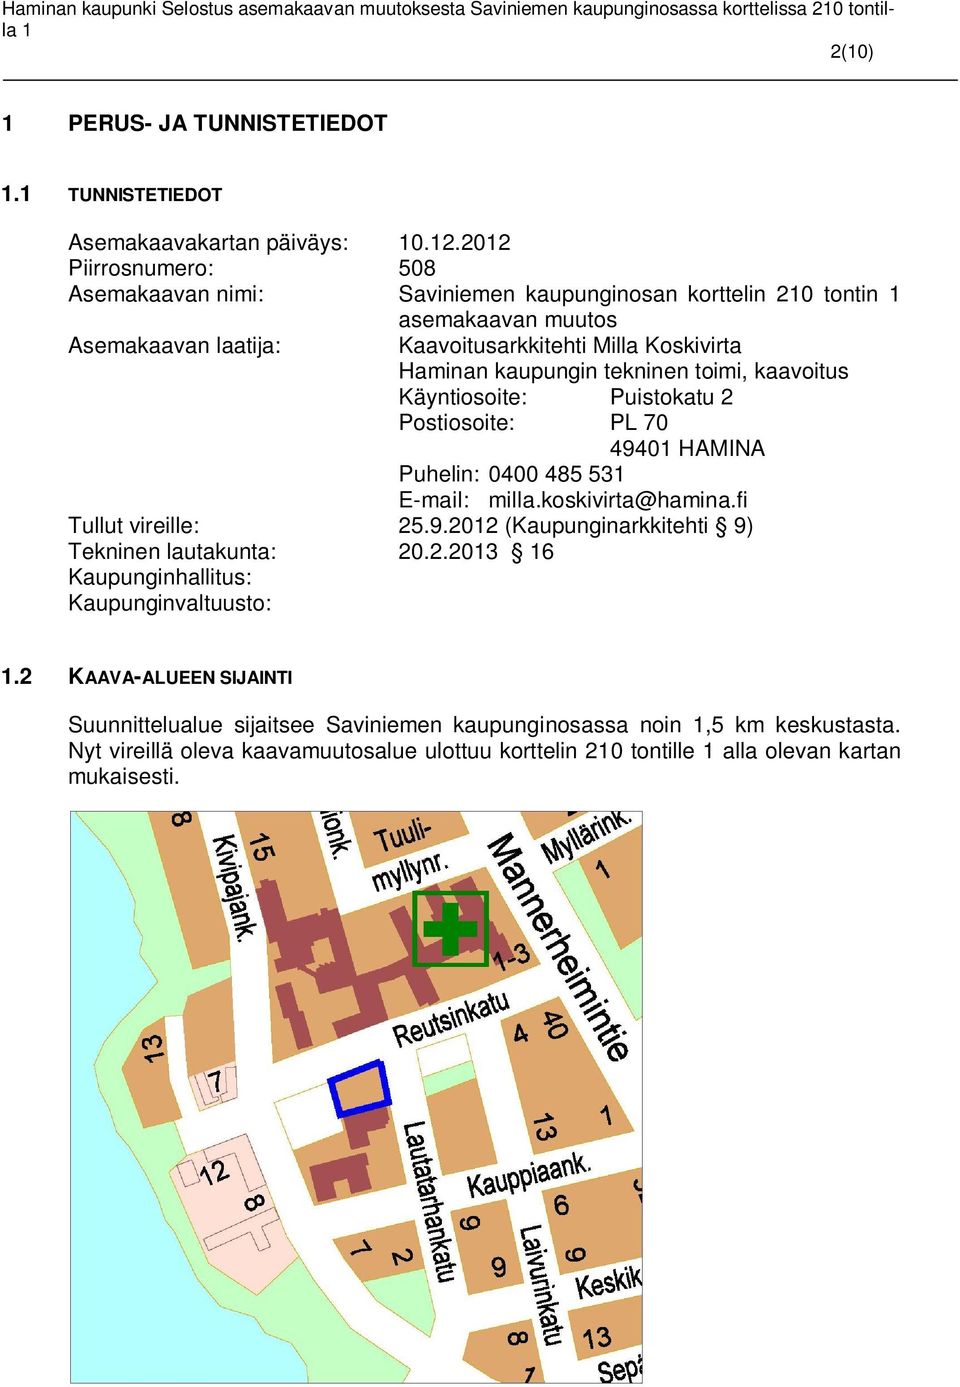 0400 485 53 E-mail: milla.koskivirta@hamina.fi Tullut vireille: 25.9.202 (Kaupunginarkkitehti 9) Tekninen lautakunta: 20.2.203 6 Kaupunginhallitus: Kaupunginvaltuusto:.